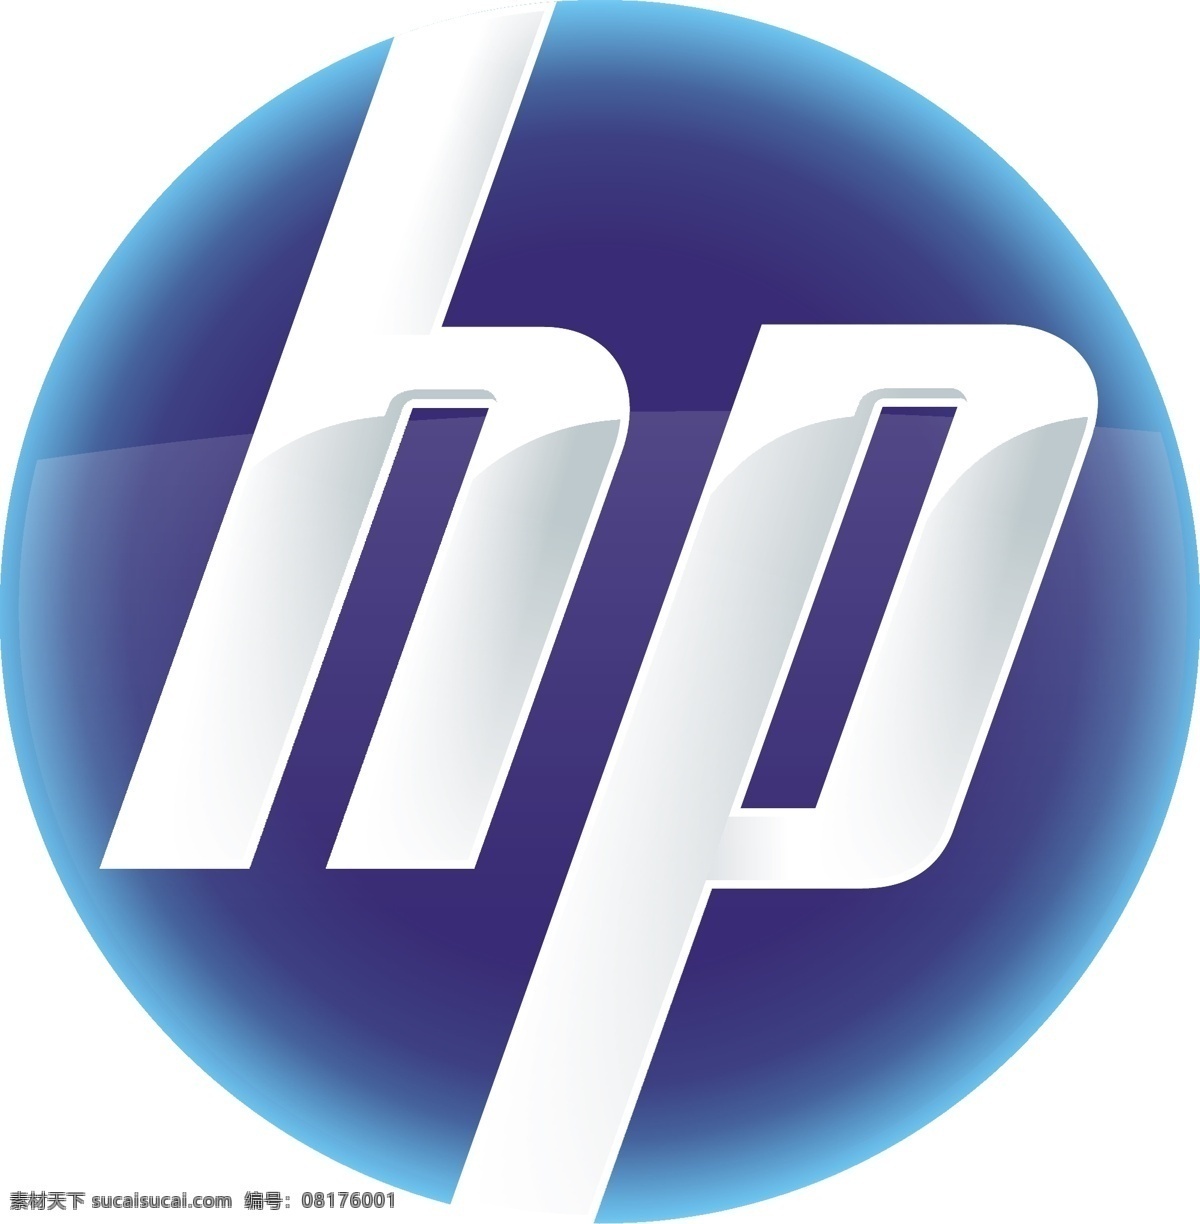 hp 惠普 新 标志 logo 矢量 惠普新标志 惠普圆形标志 企业logo 企业 标识标志图标